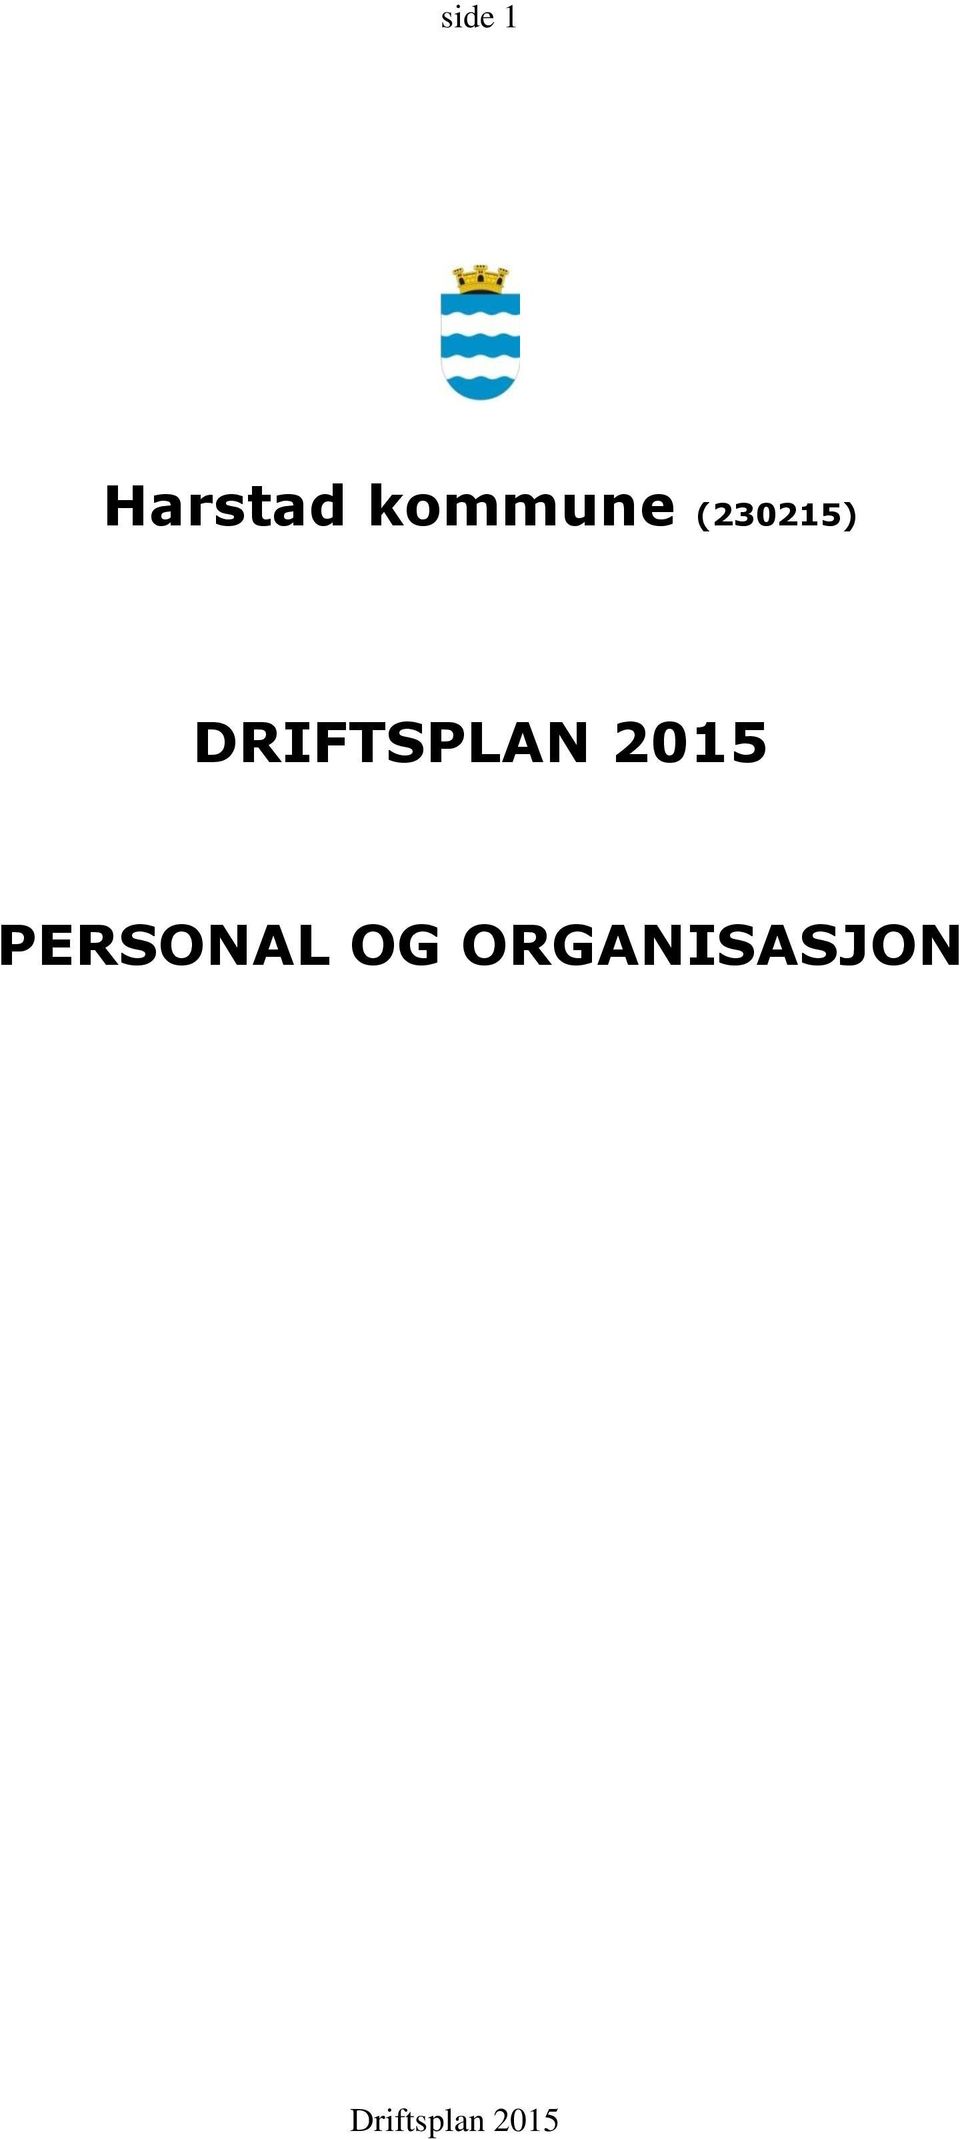 DRIFTSPLAN 2015